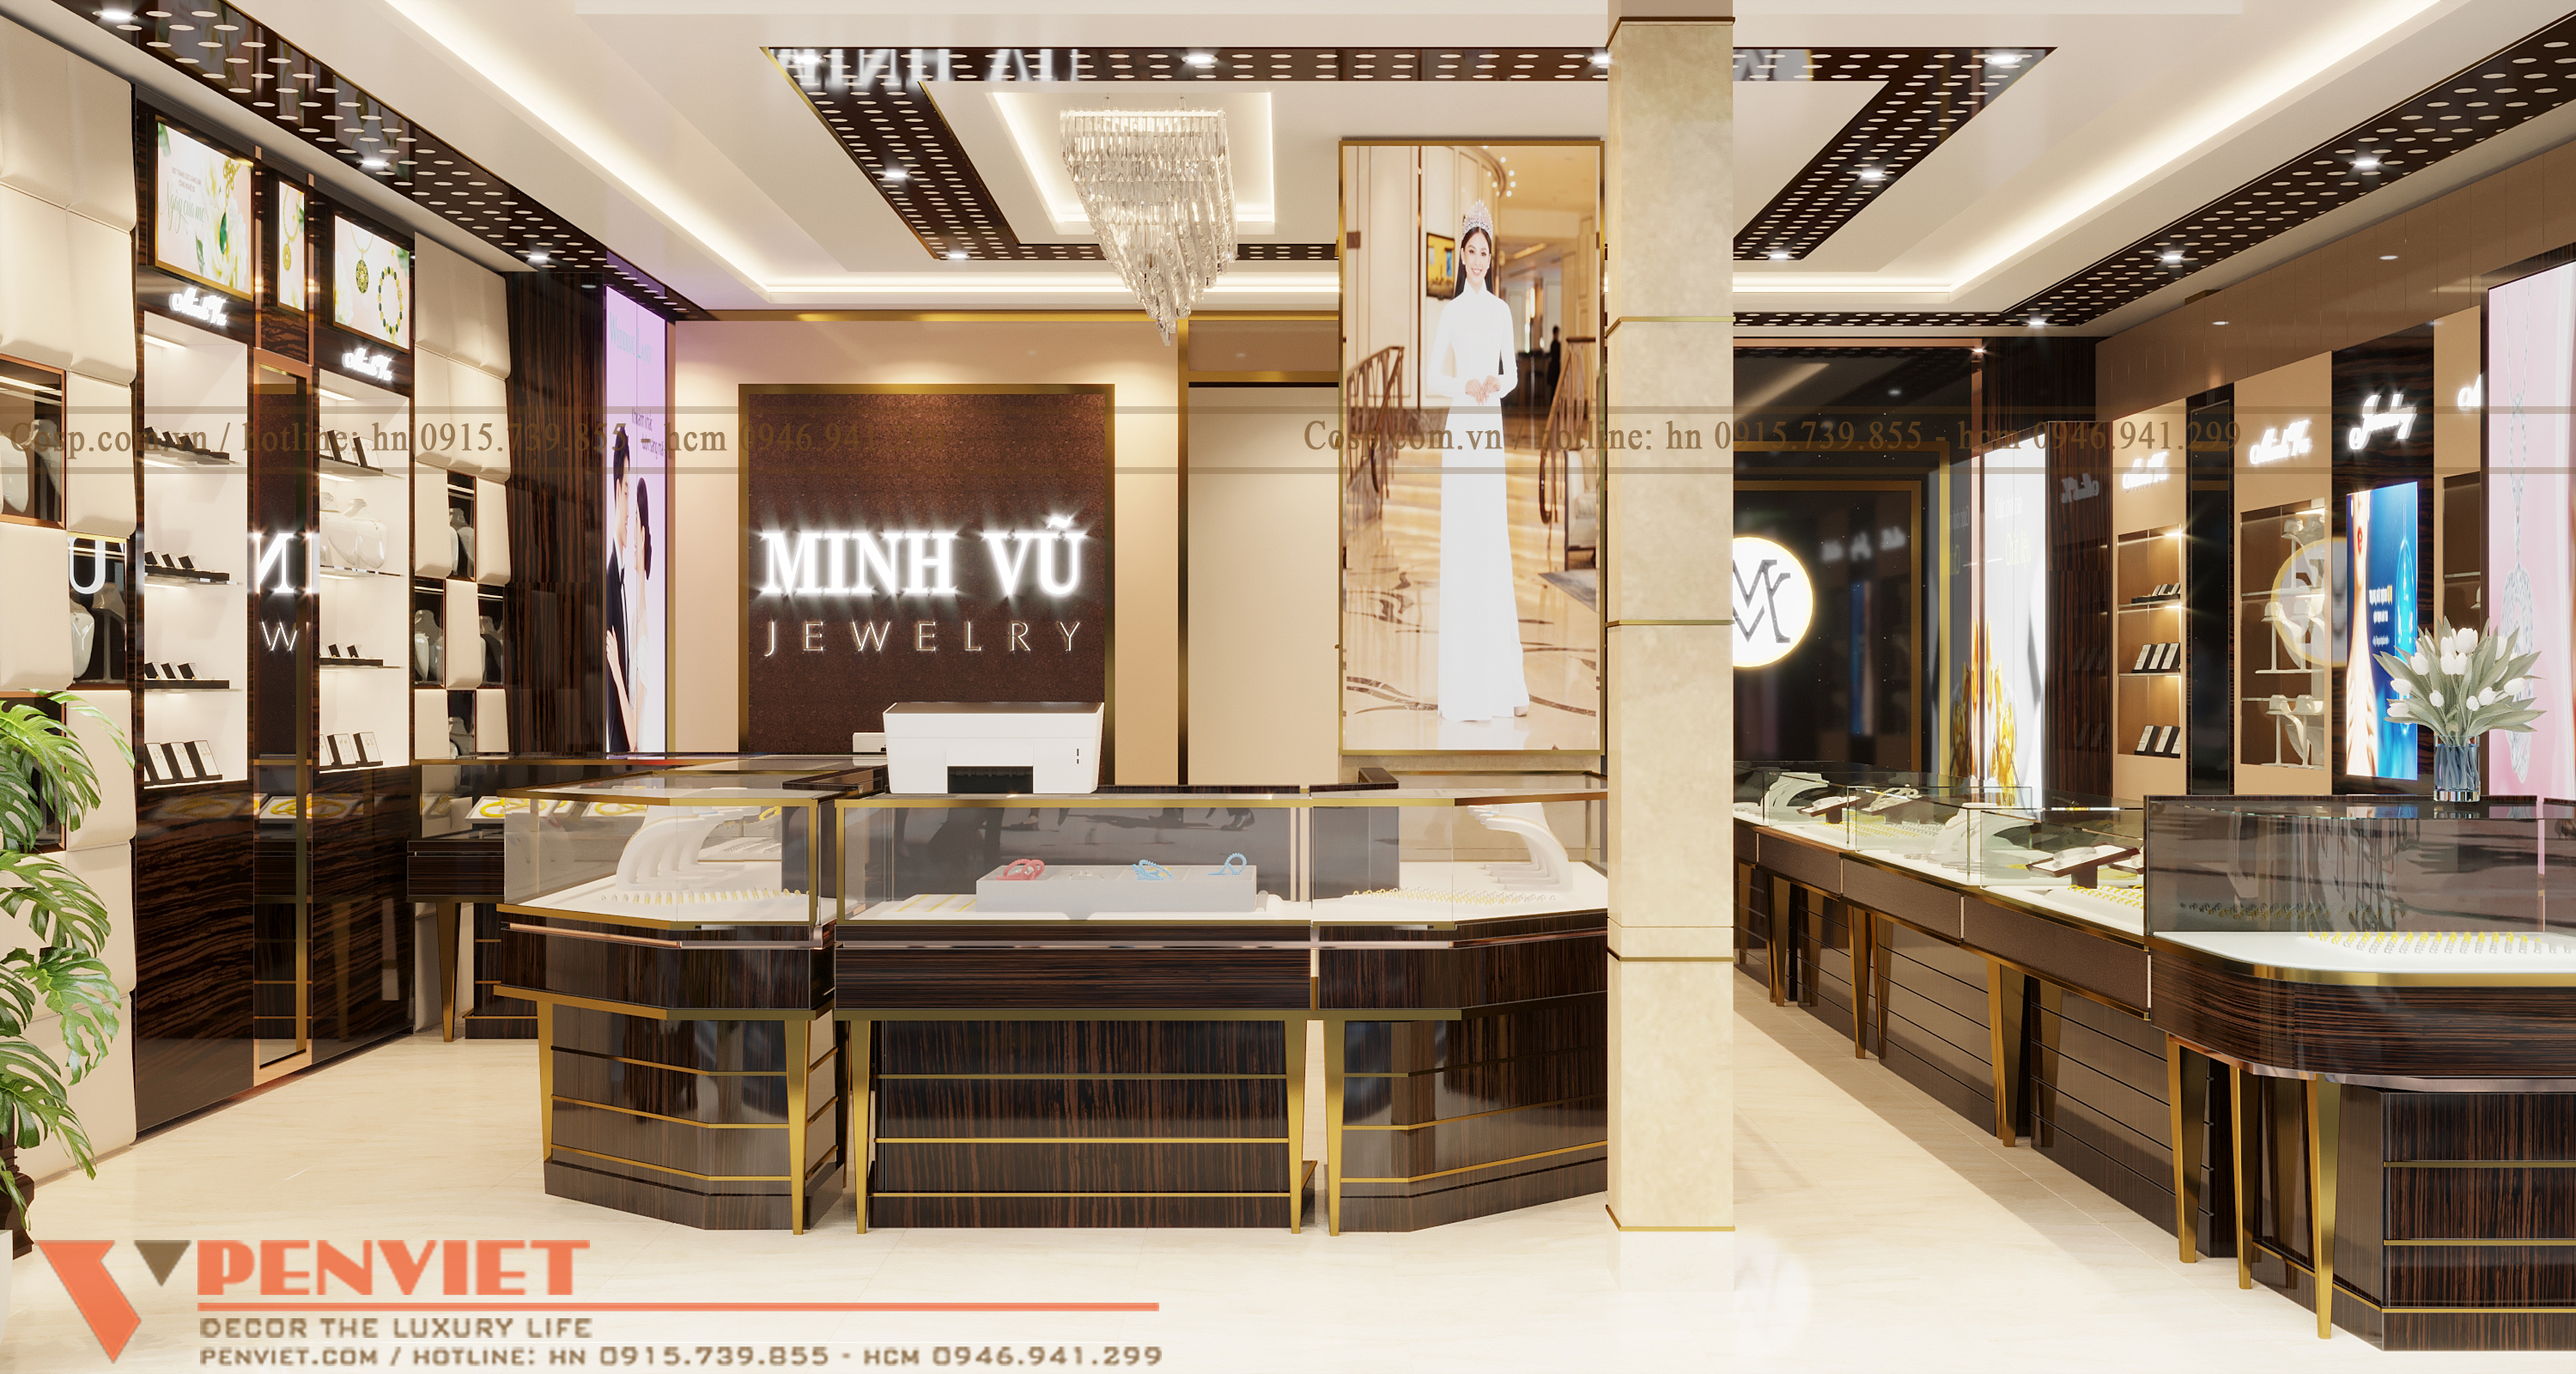 Thiết kế cửa hàng trang sức Minh Vũ